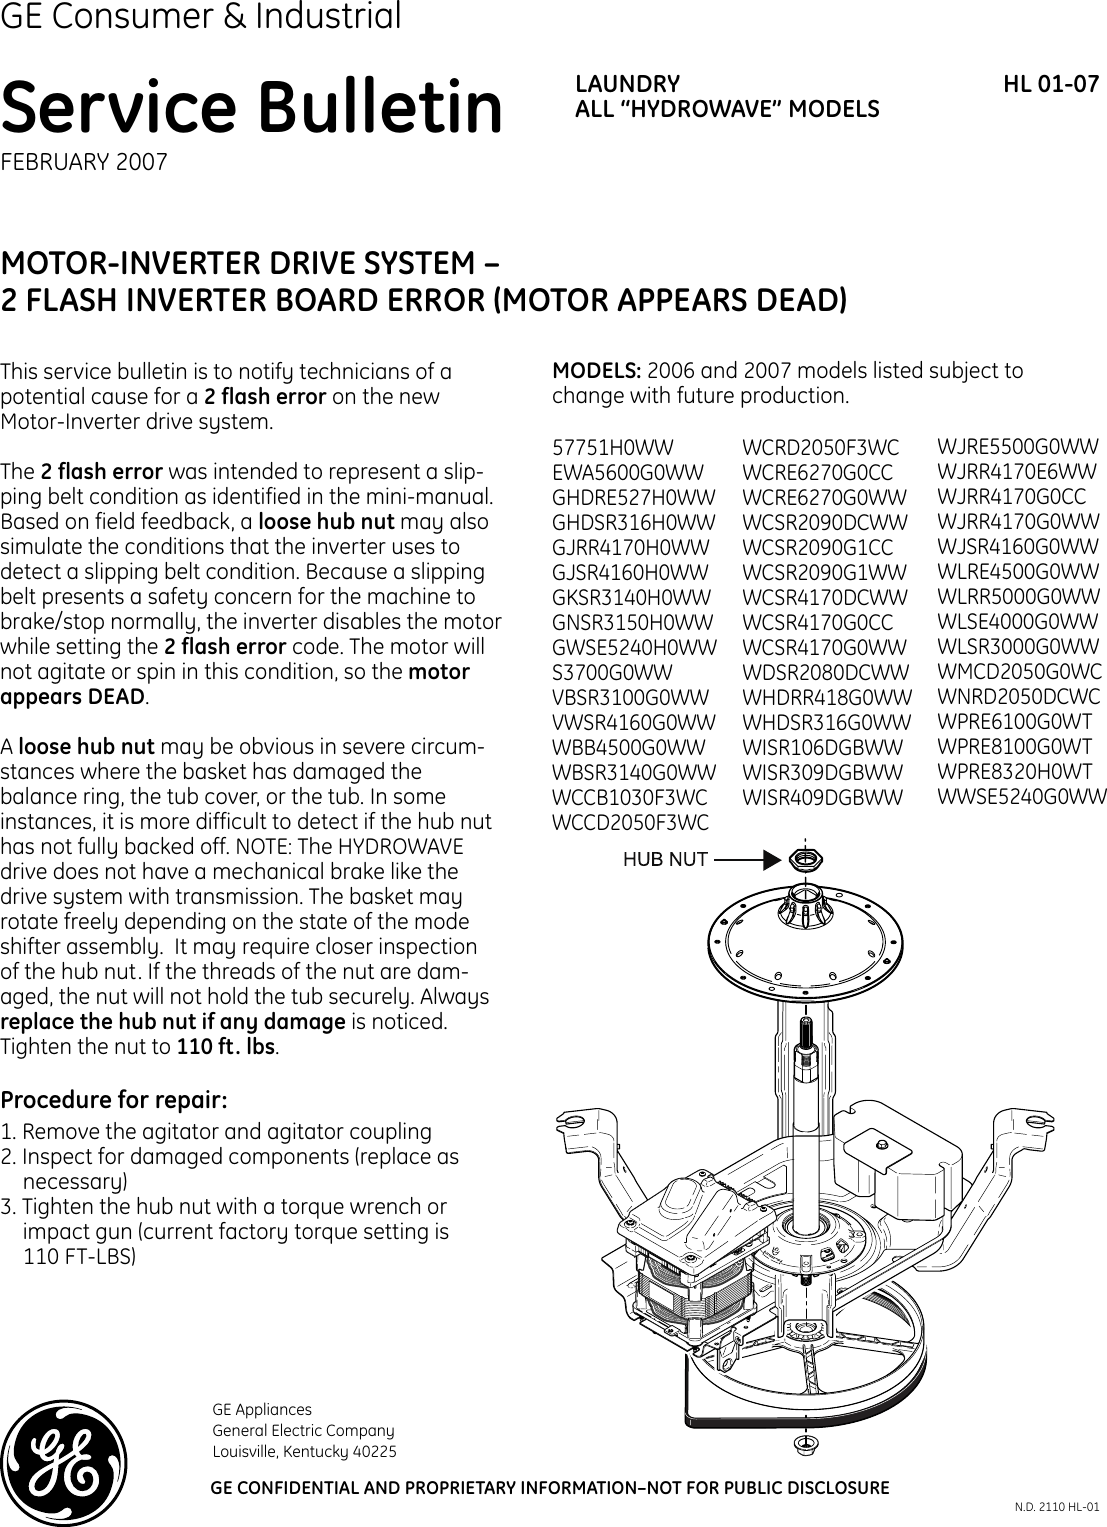 Page 1 of 2 - HL 01_07  GE - Washer Motor & Inverter Problem HL01-07[1]